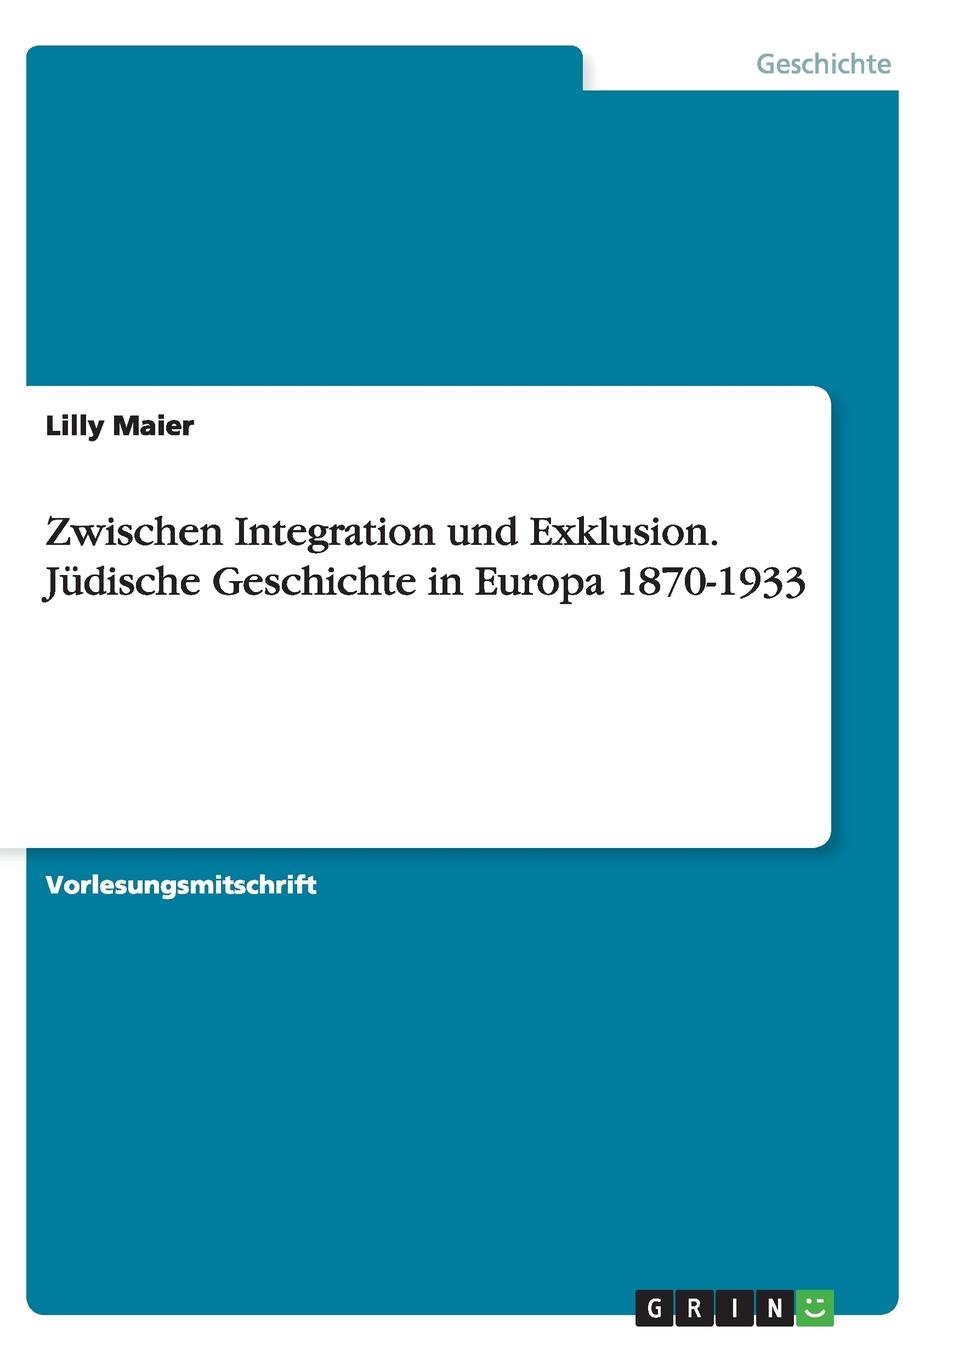 Zwischen Integration und Exklusion. Judische Geschichte in Europa 1870-1933